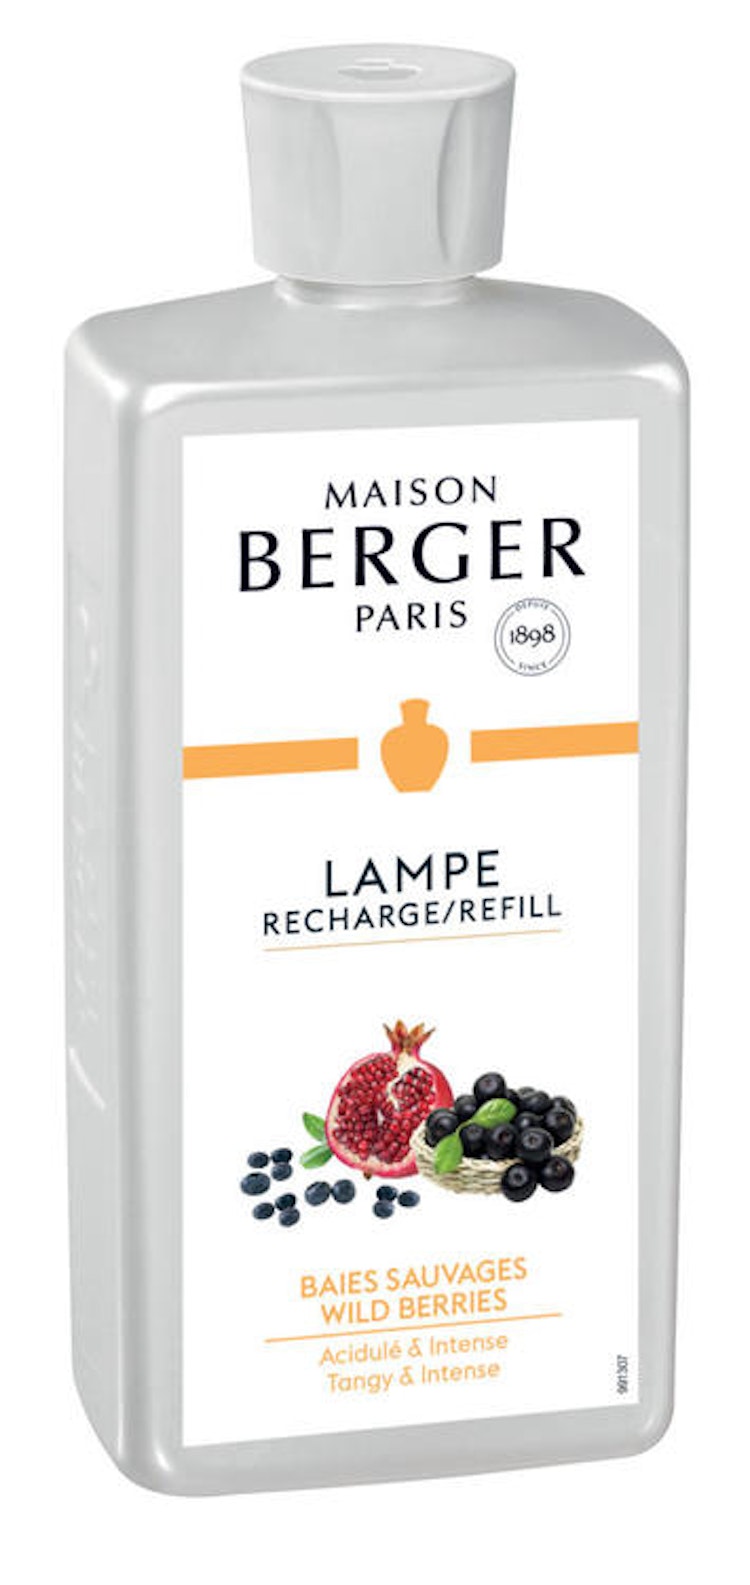 Doft Wild Berries - Maison Berger ( Lampe Berger)